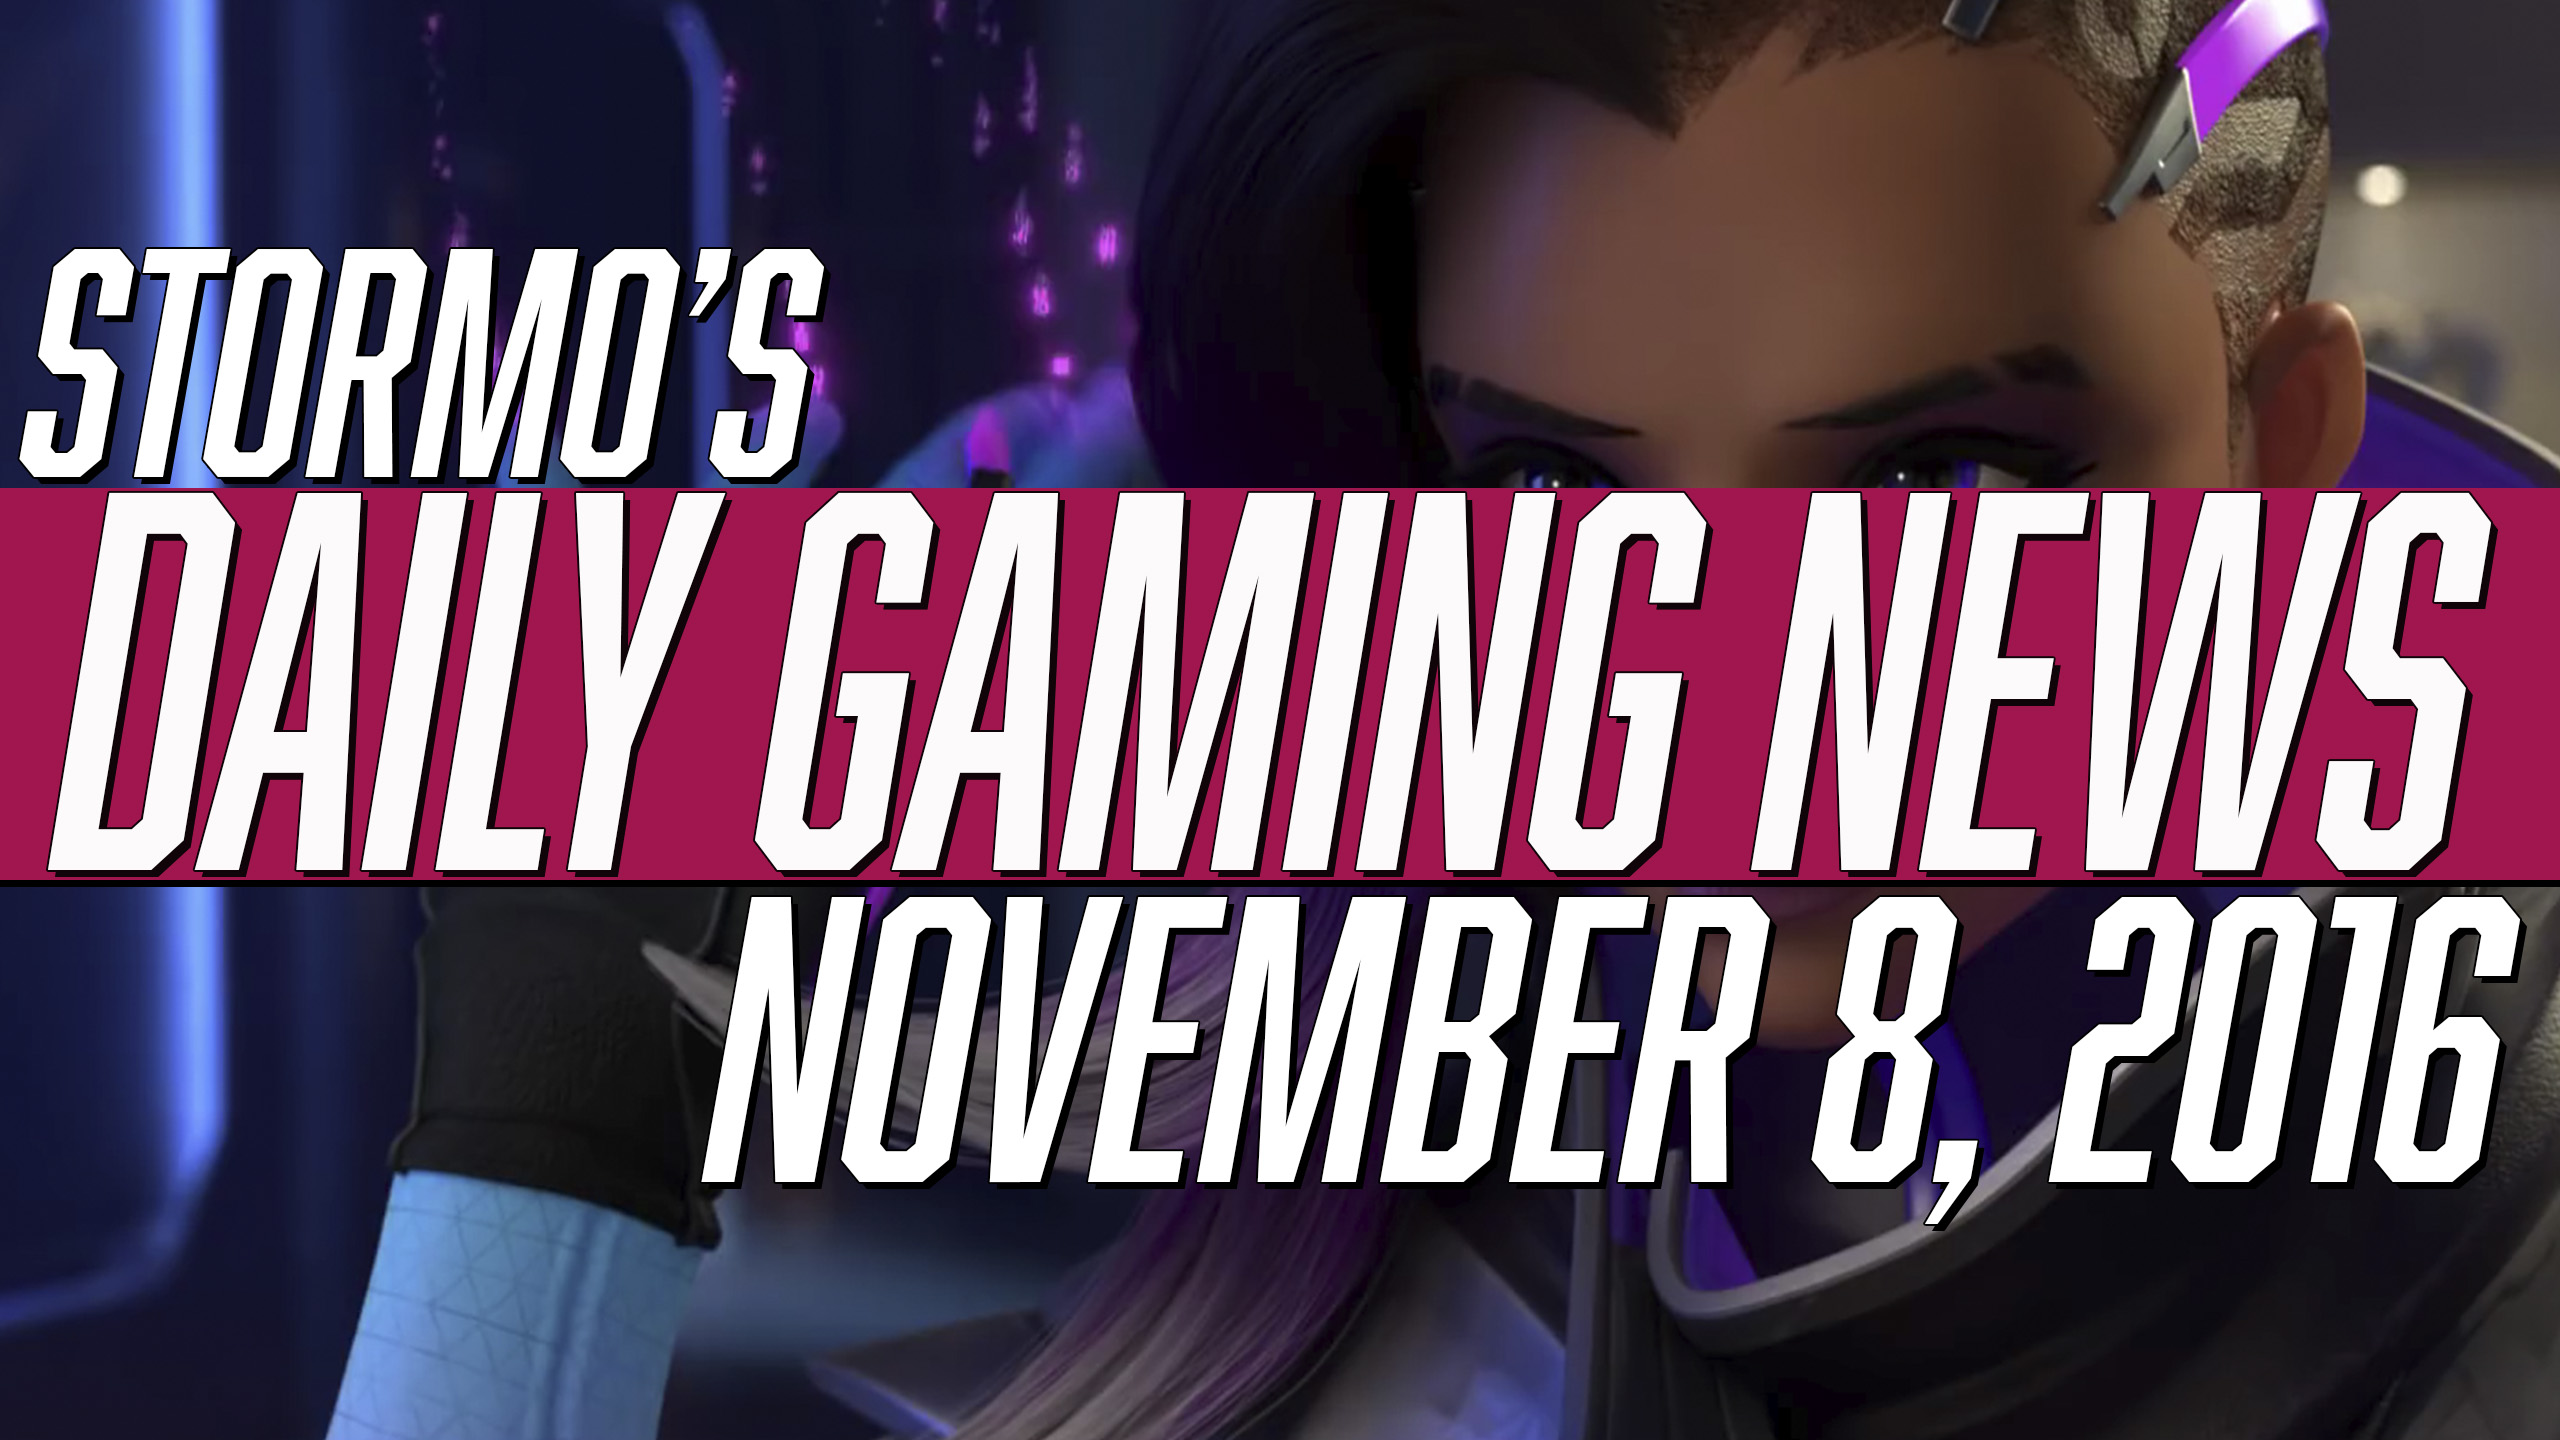 Daily Gaming News - November 8, 2016